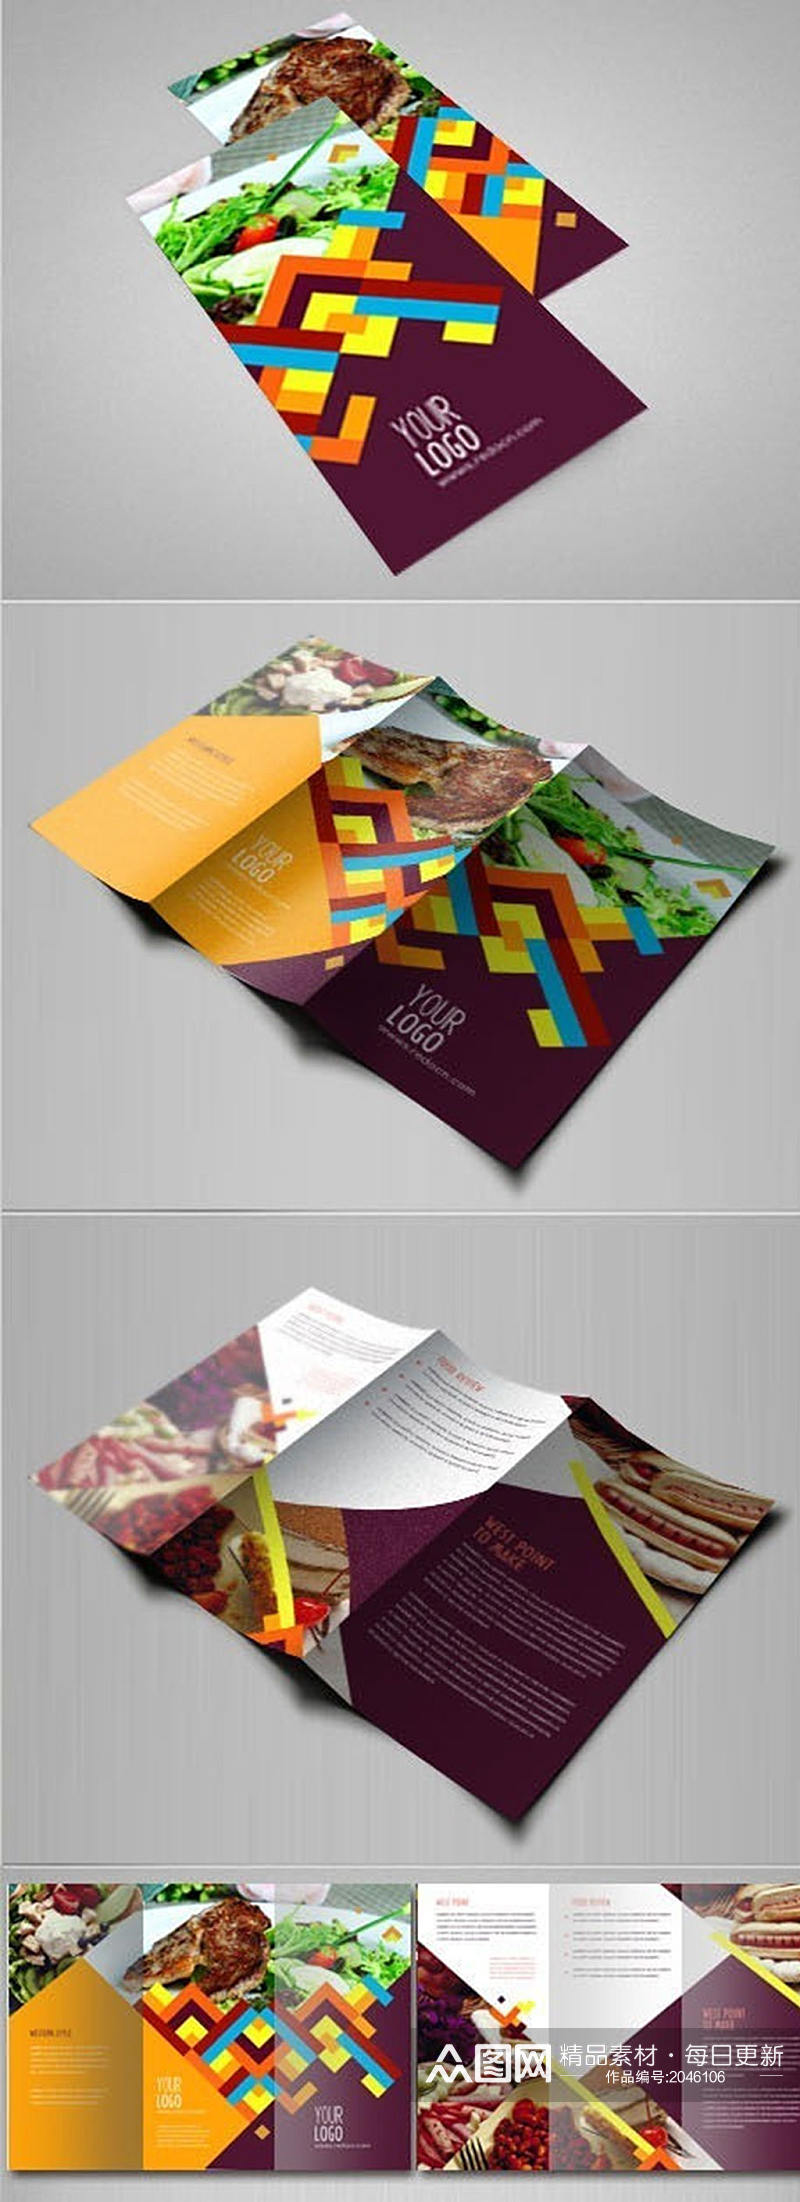 彩色美食折页设计素材